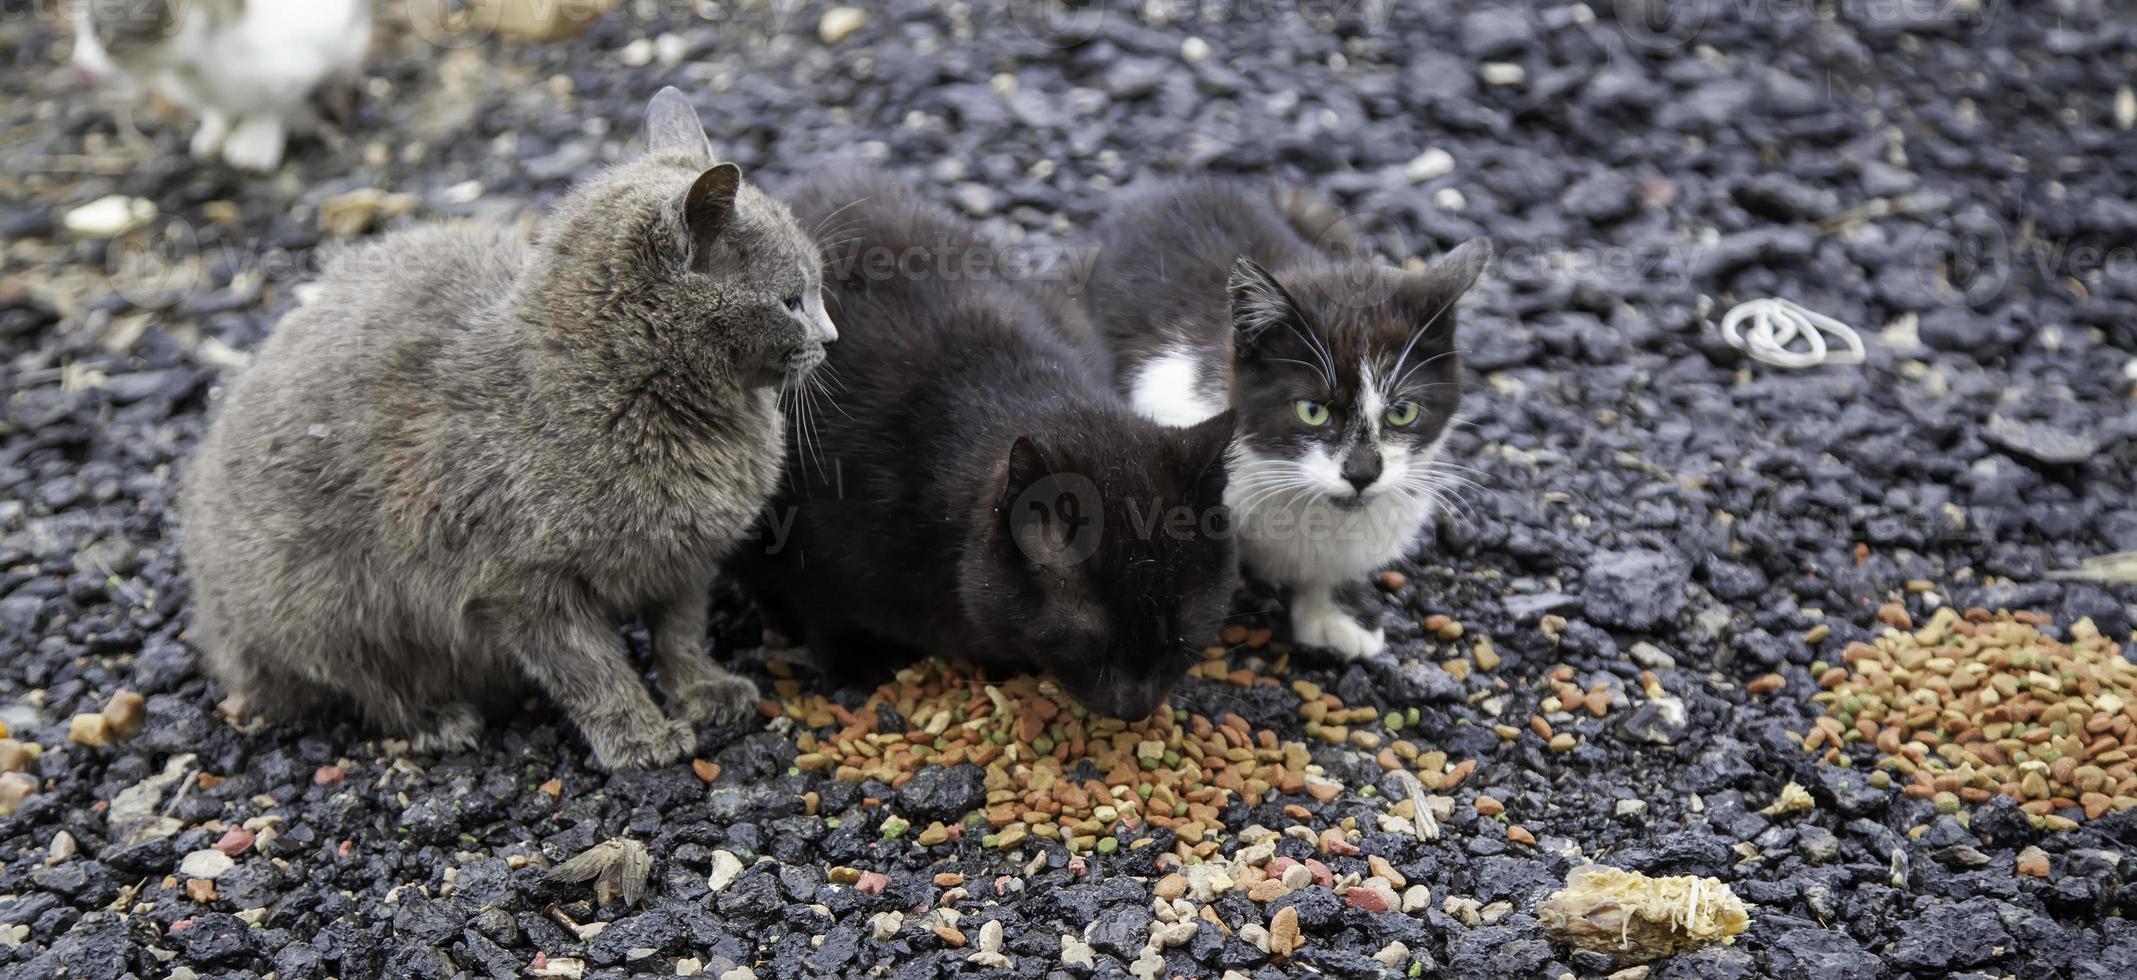 gatti che mangiano per strada foto